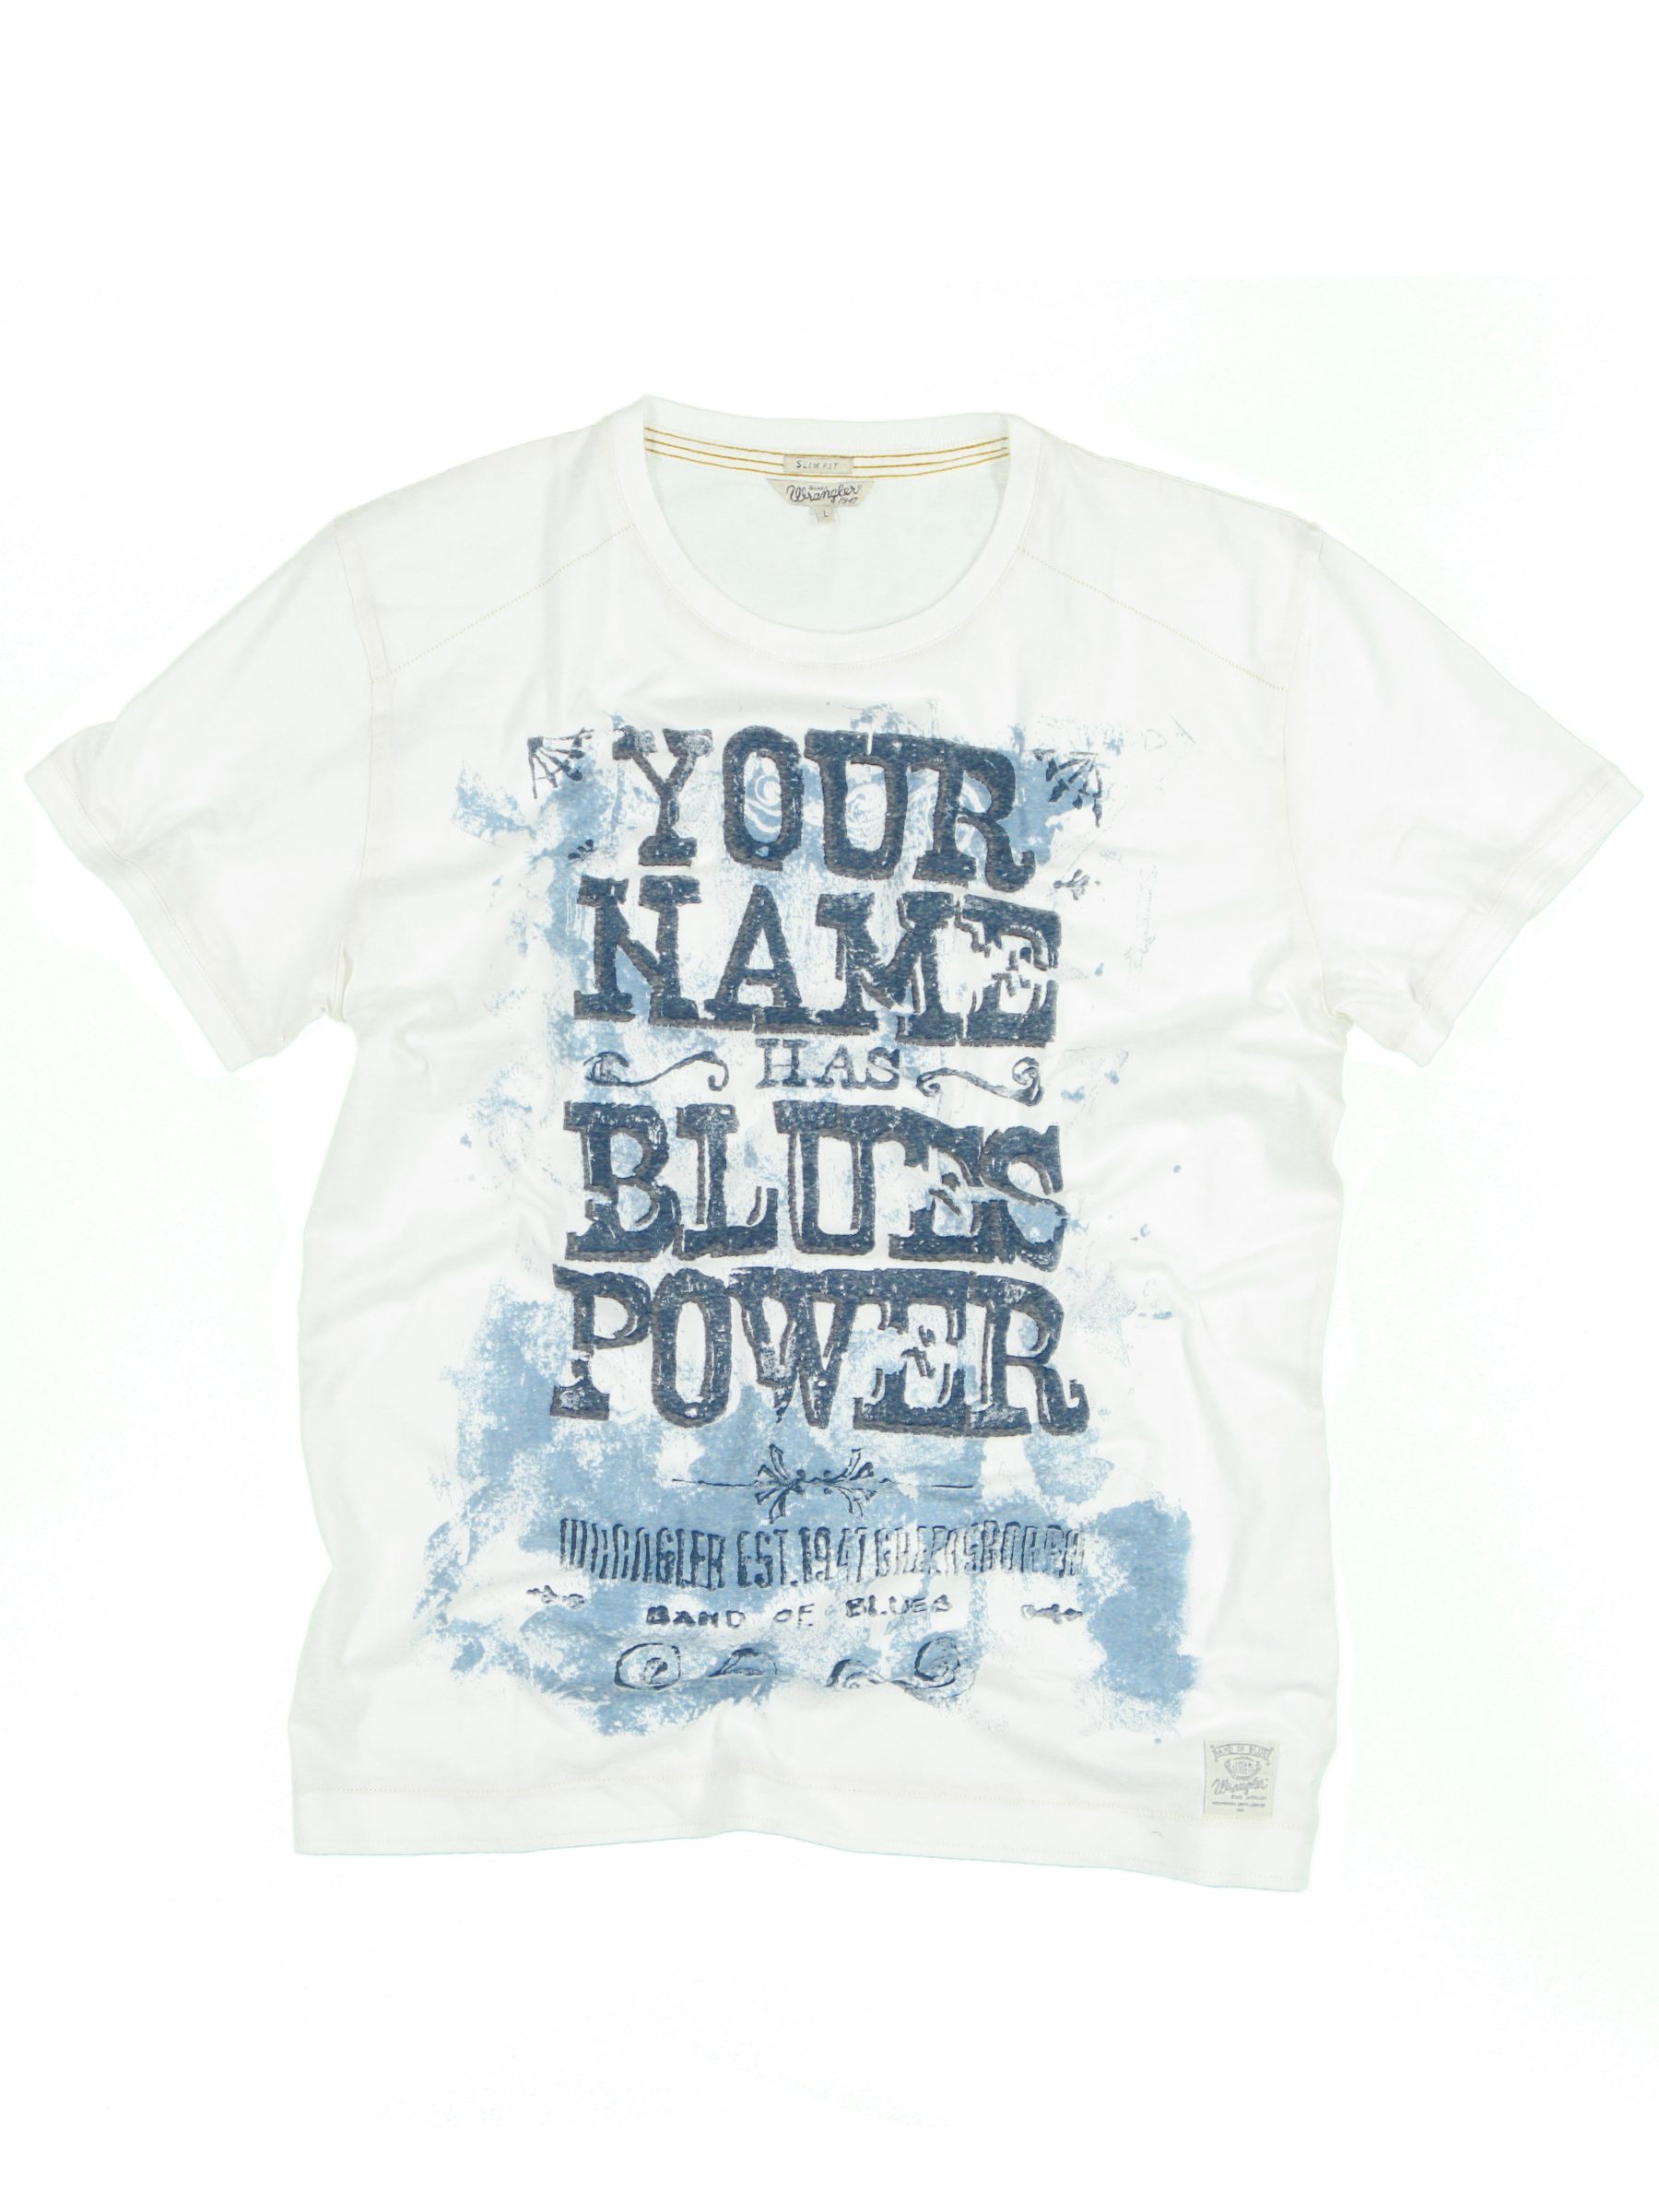 Wrangler Blue Power Short Sleeve T-Shirt,